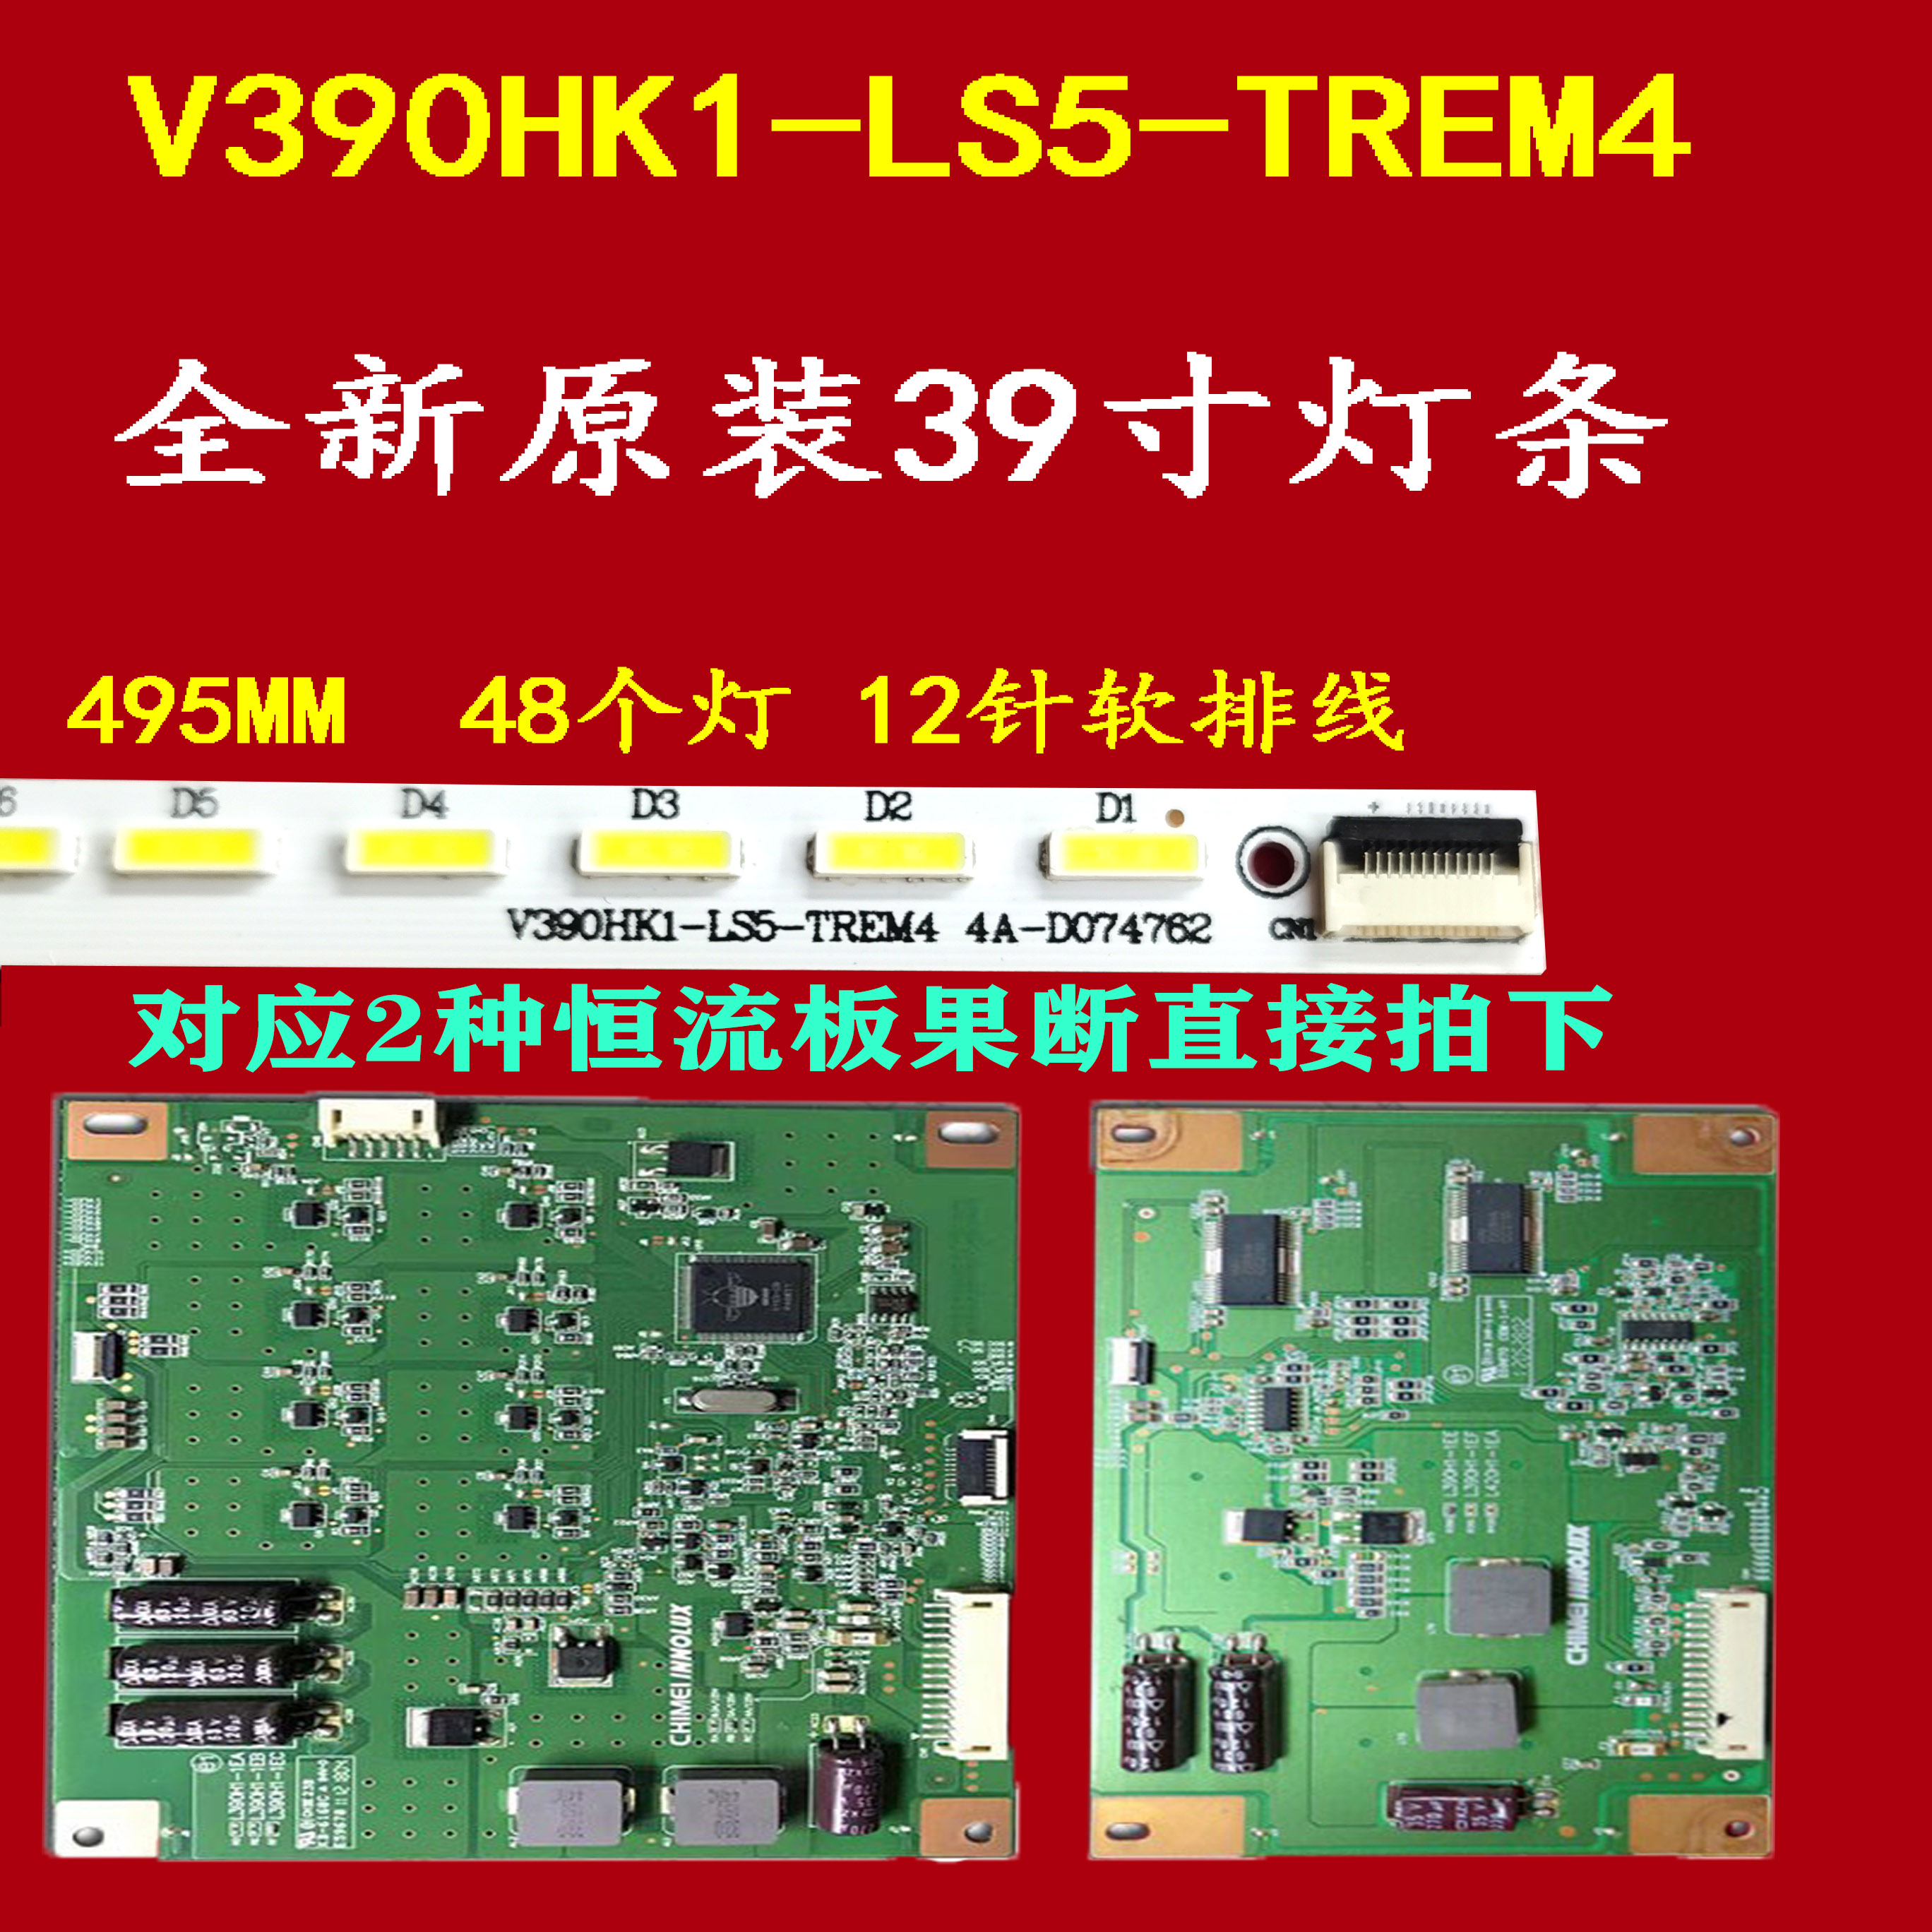 海尔LE39A700K灯条 屏v390hk1-ls5 V390HK1-LS5-TREM4铝板一套 电子元器件市场 显示屏/LCD液晶屏/LED屏/TFT屏 原图主图